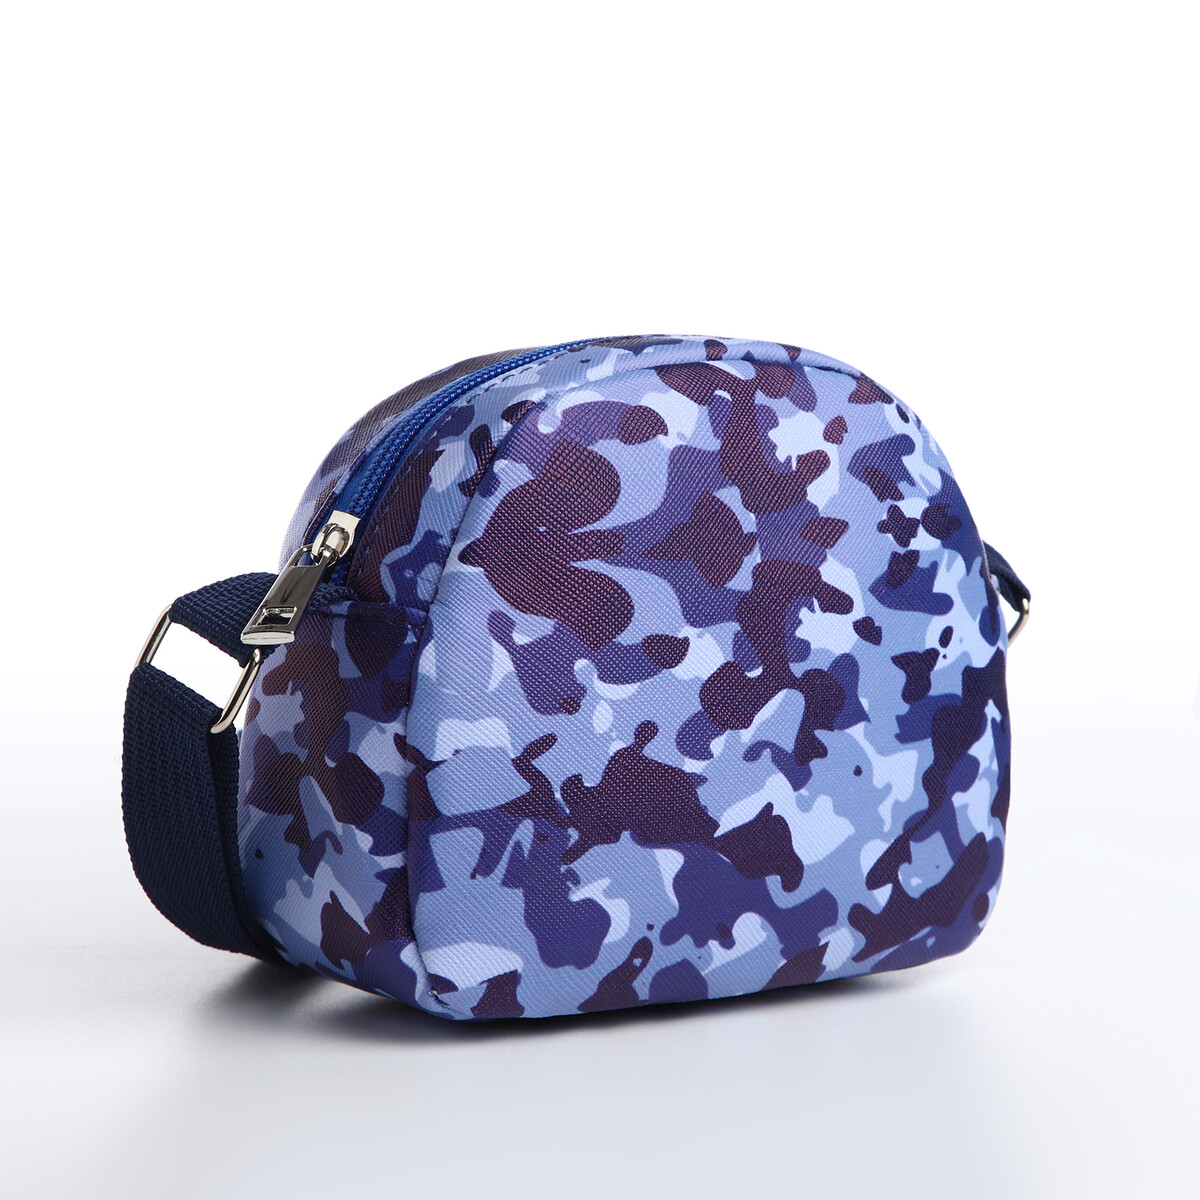 Сумка детская на молнии, цвет синий/камуфляж сумка детская на молнии синий камуфляж